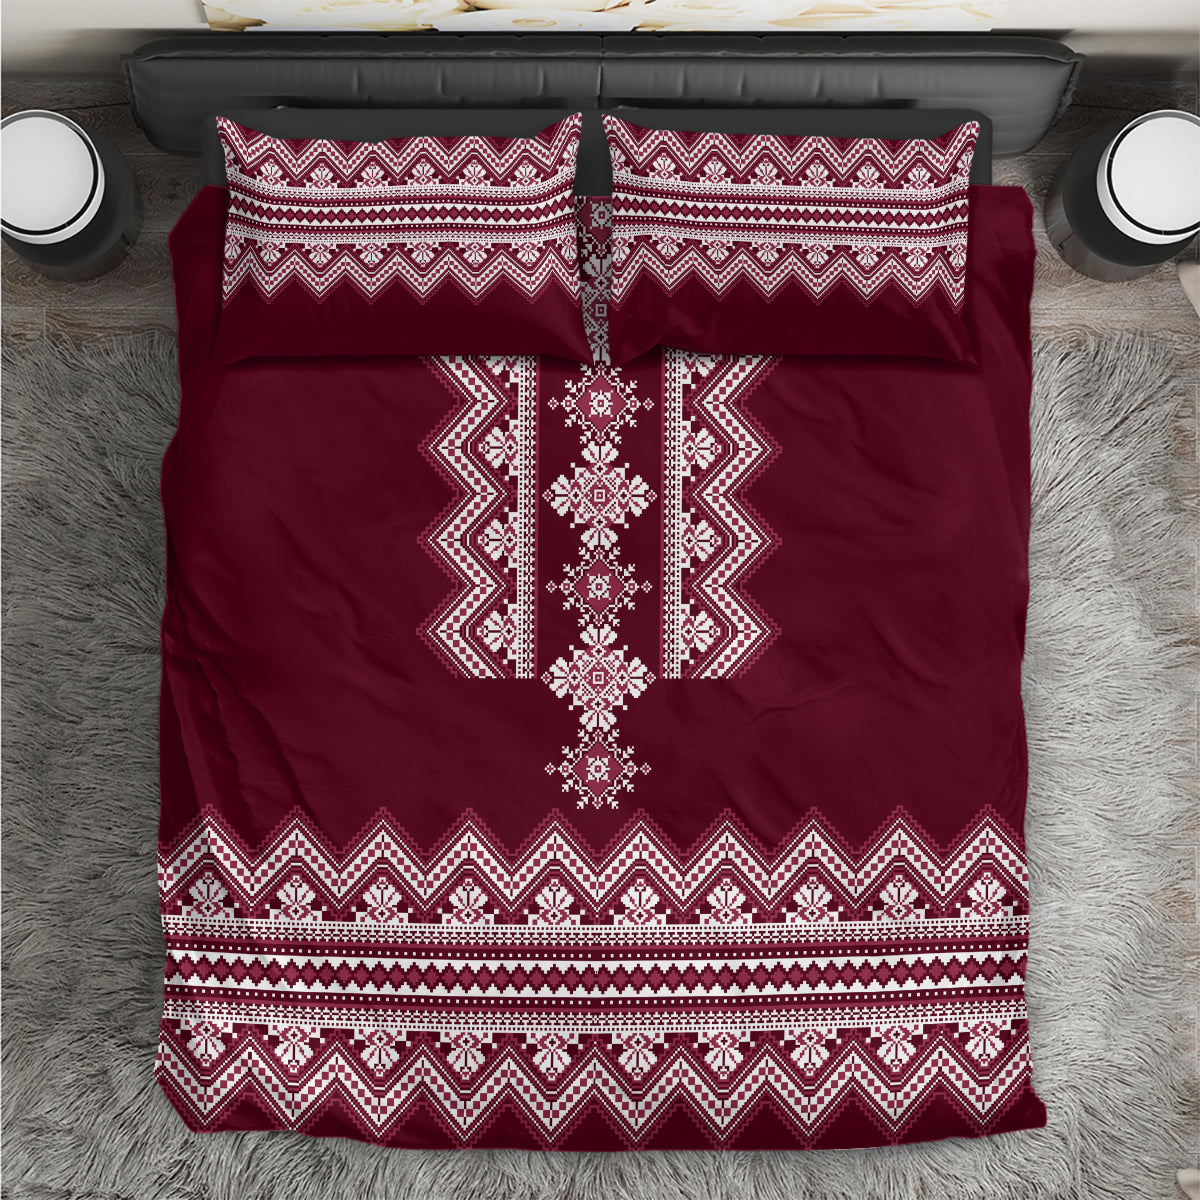 ukraine-folk-pattern-bedding-set-ukrainian-wine-red-version